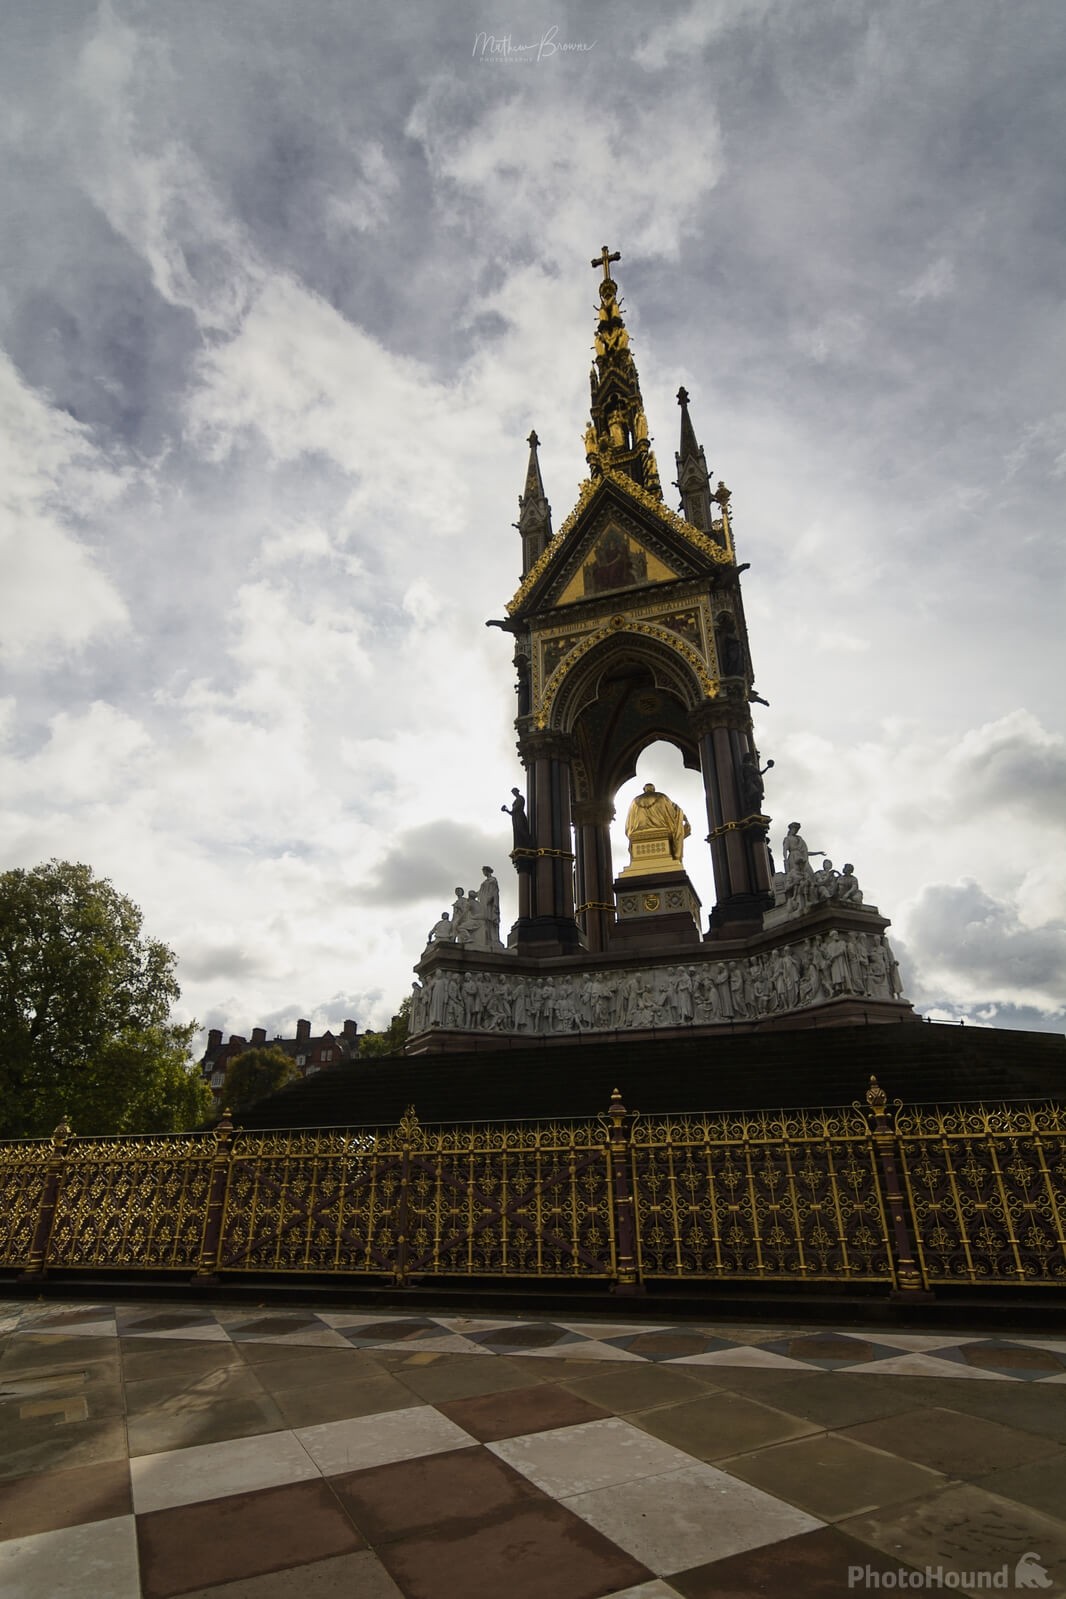 Image of The Albert Memorial, Kensington Gardens by Mathew Browne